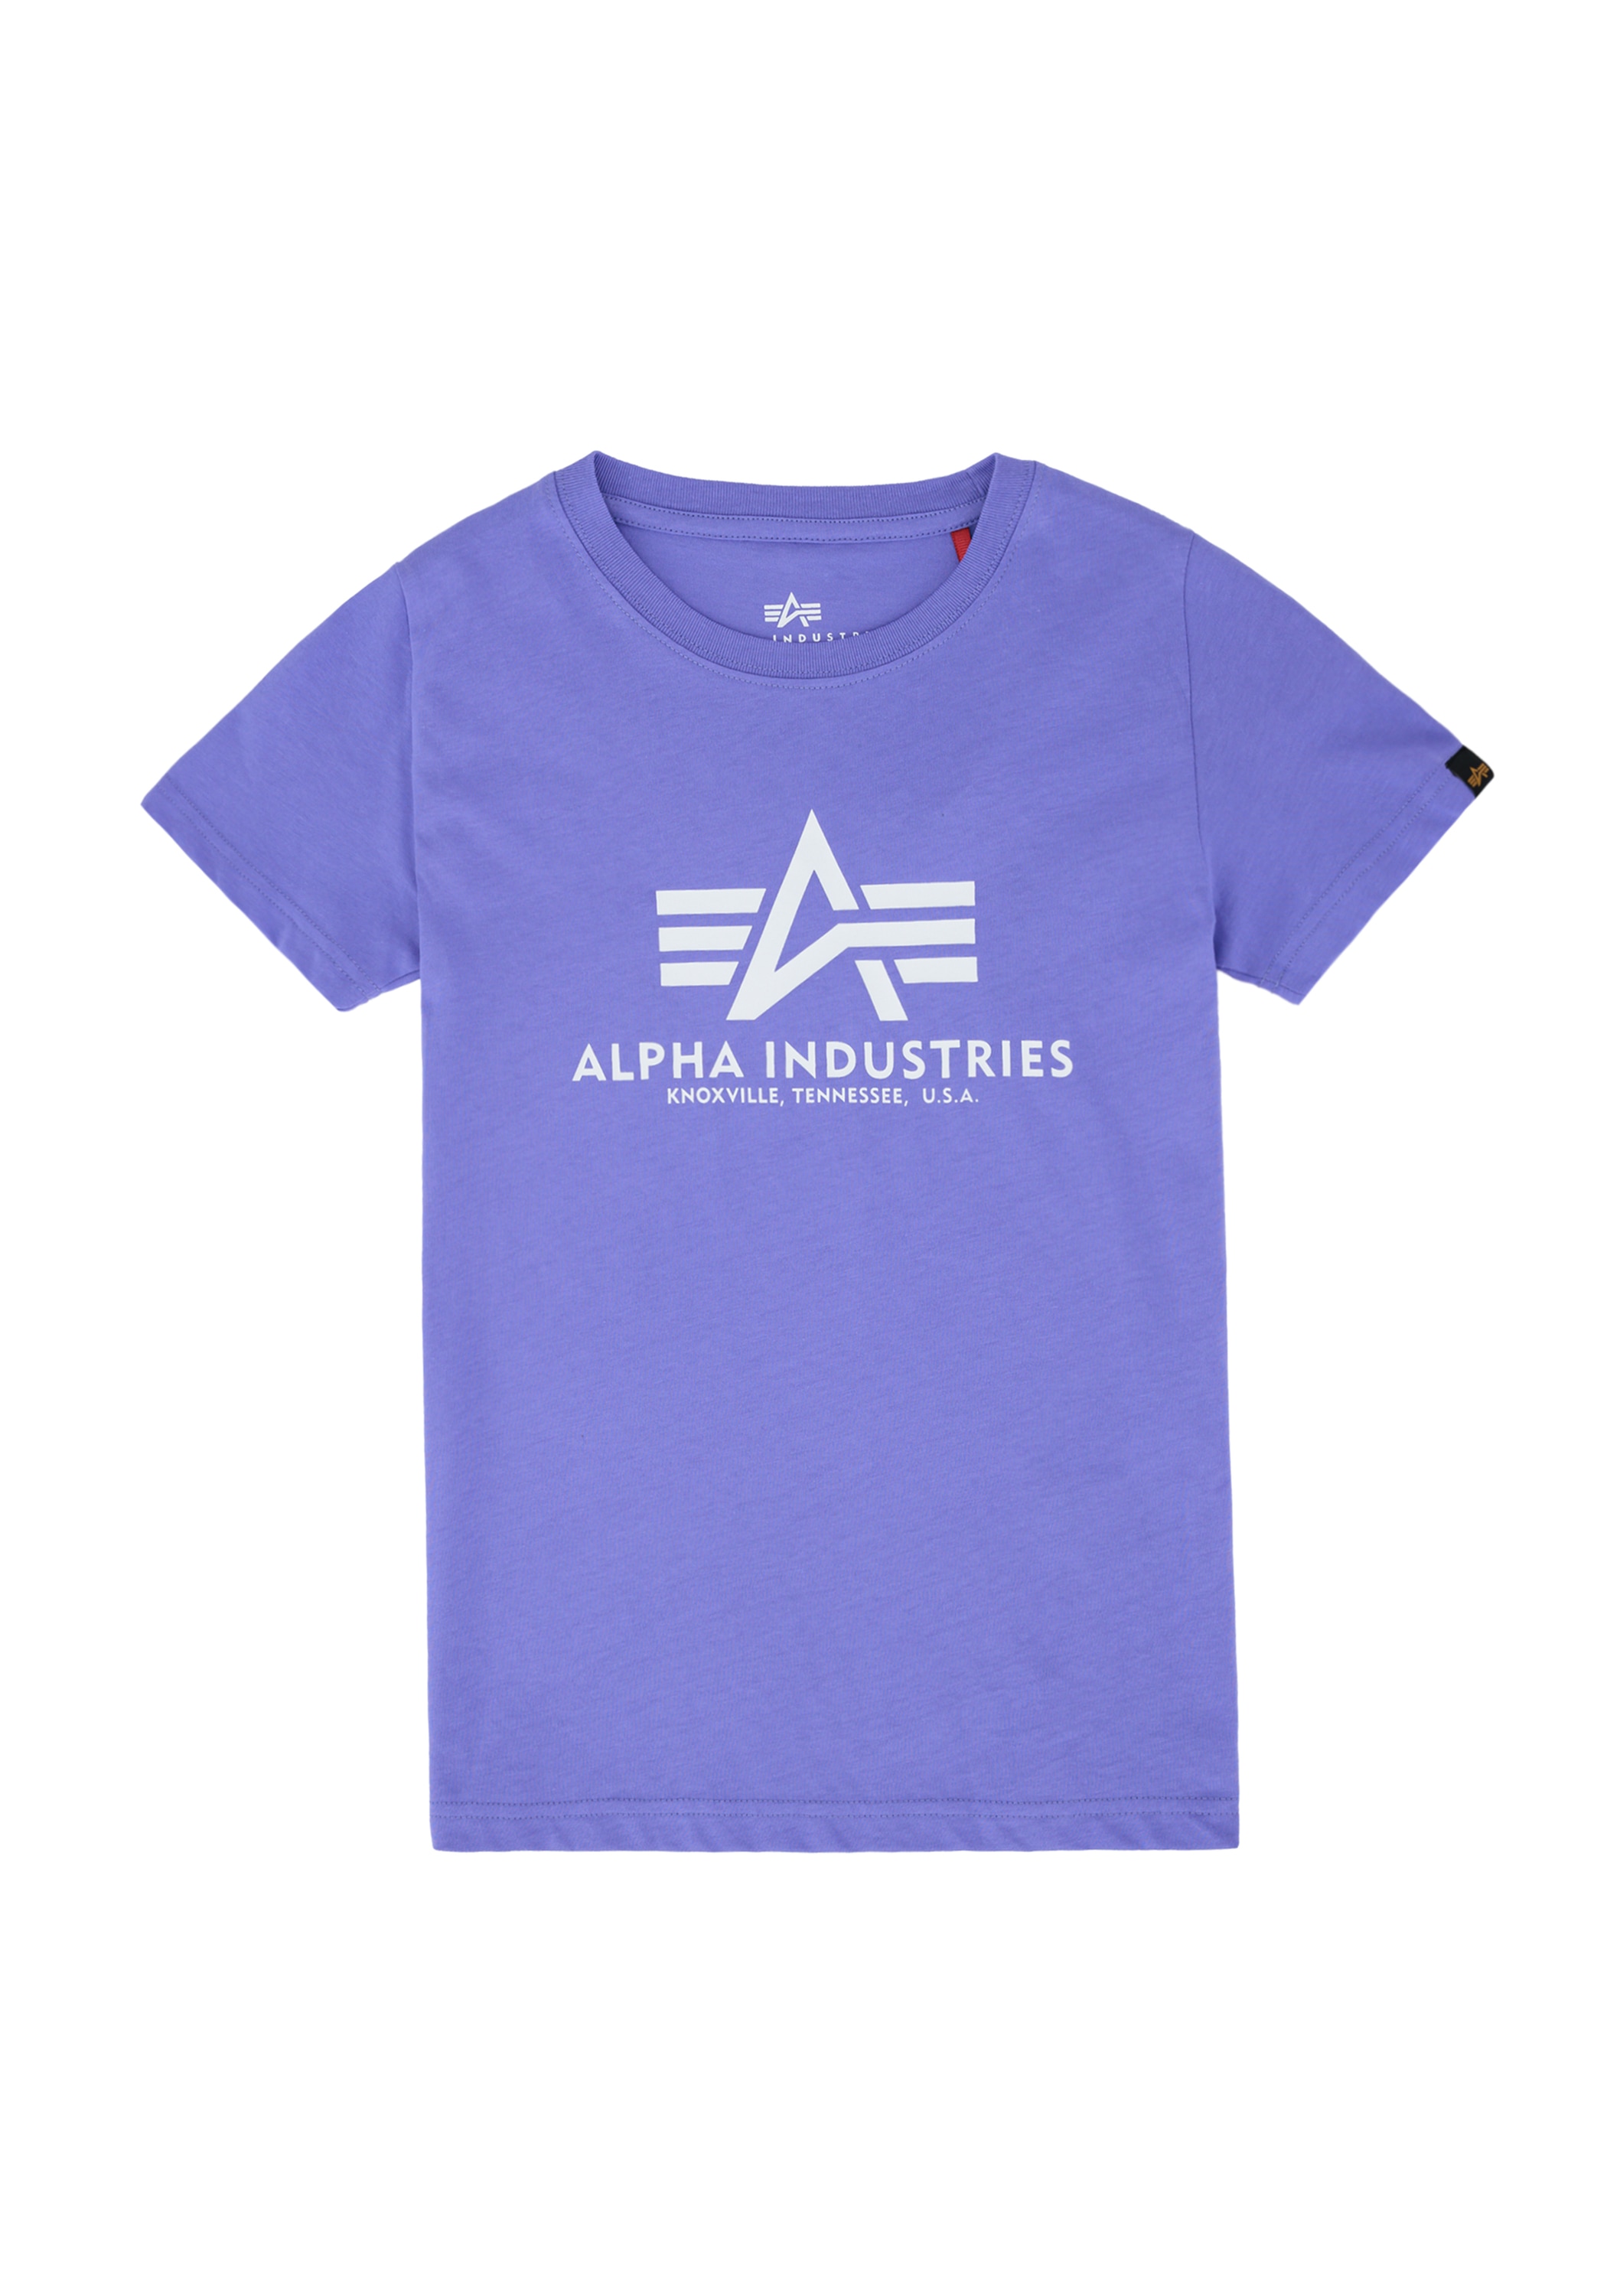 Alpha Industries BAUR T-Shirt kaufen Kids Basic T »Alpha Kids/Teens« - T-Shirts | Industries